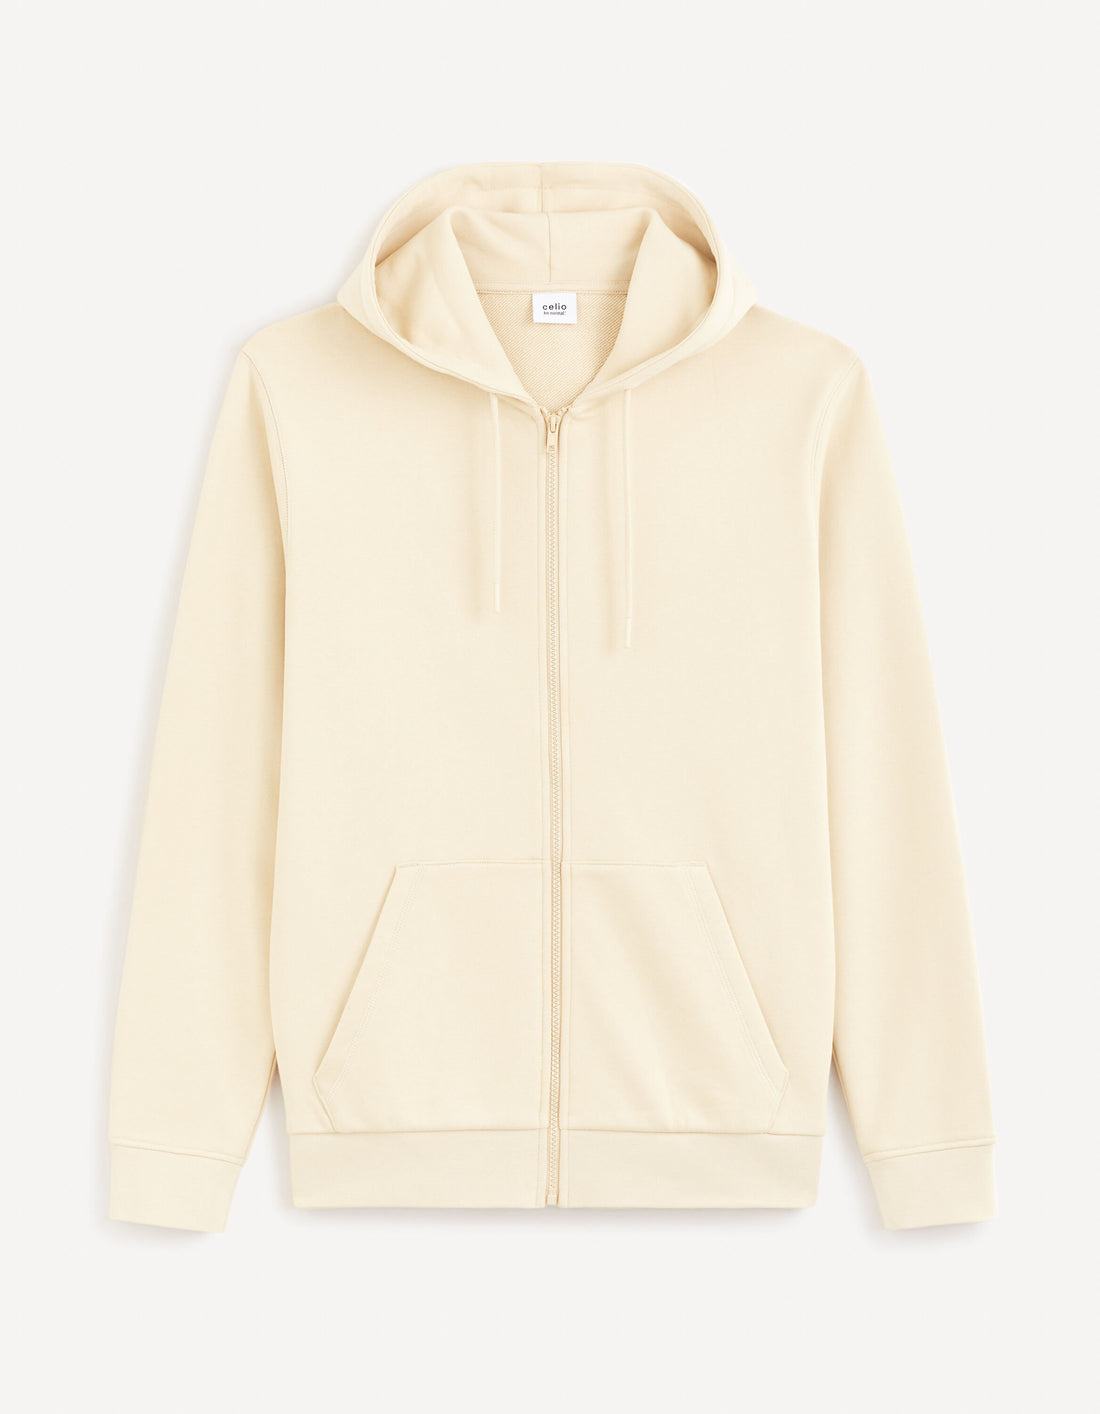 Zipped Hooded Sweatshirt 100% Cotton_FETHREE_BEIGE_01